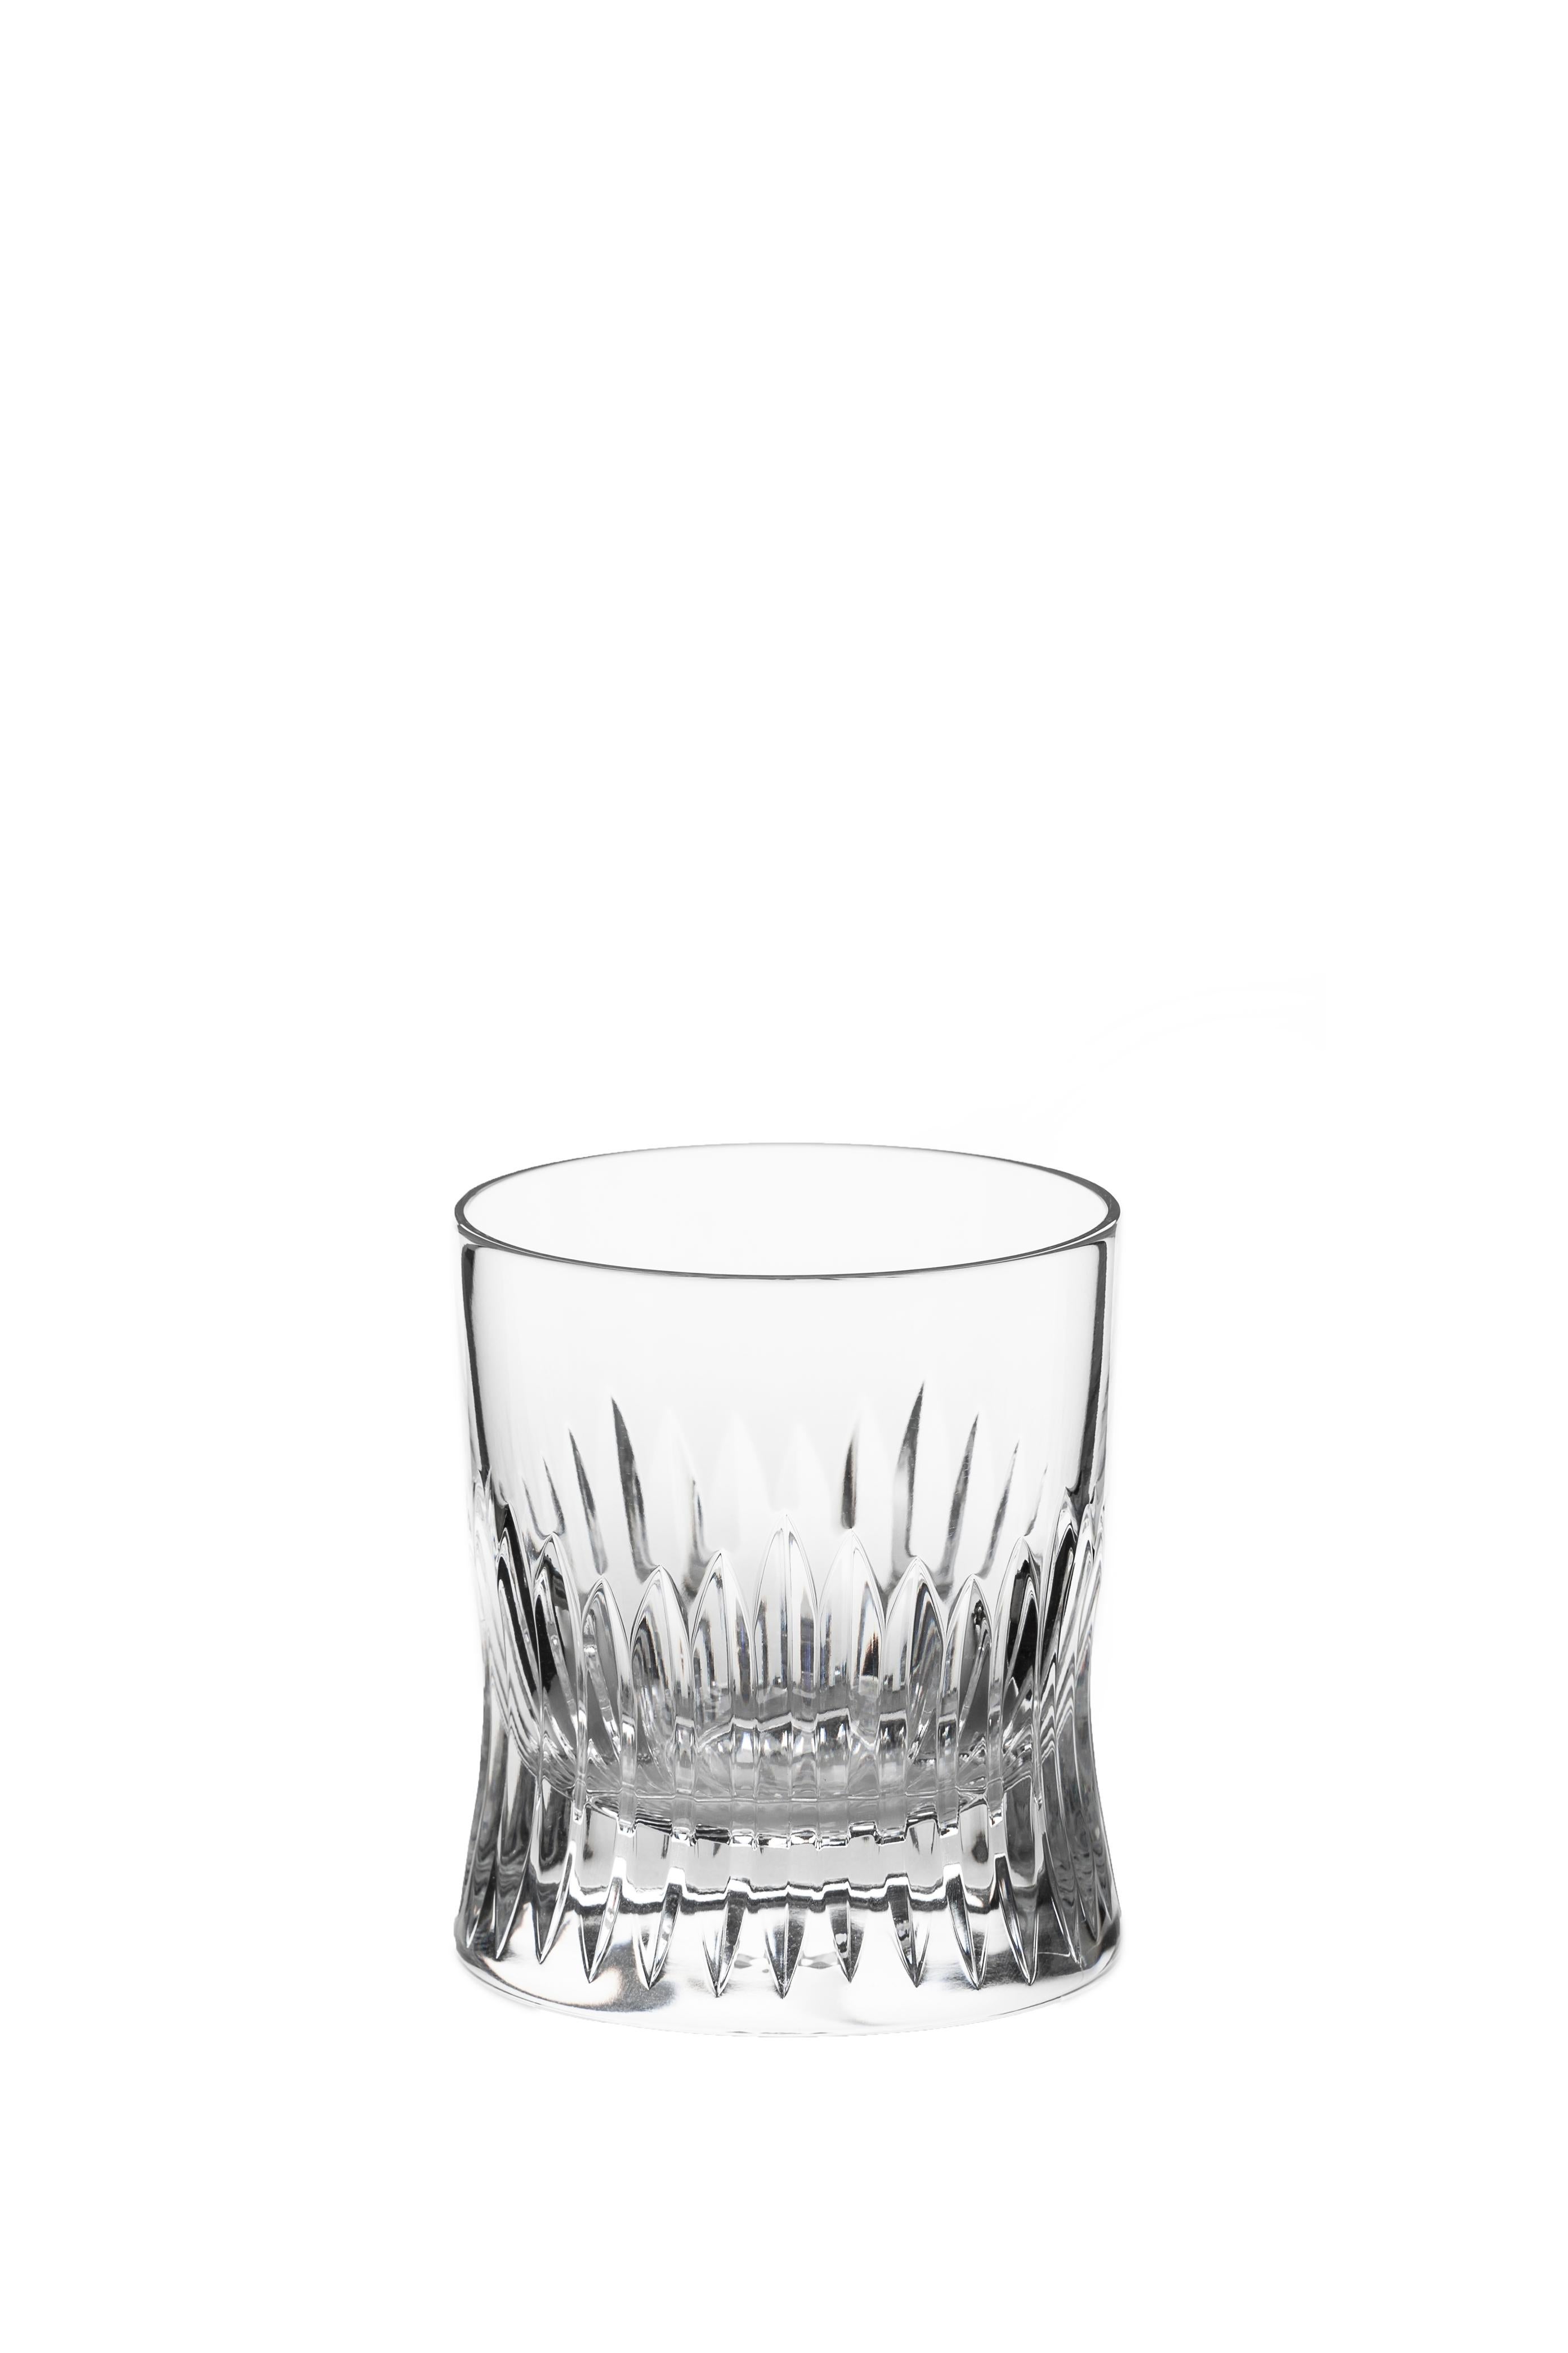 Ein von Hand gefertigtes Whiskeyglas (Teil der ständigen Sammlung des Musee des Arts Decoratifs)

Das Glas wurde von Martino Gamper für J. HILL's Standard als Teil unserer Kollektion CUTTINGS